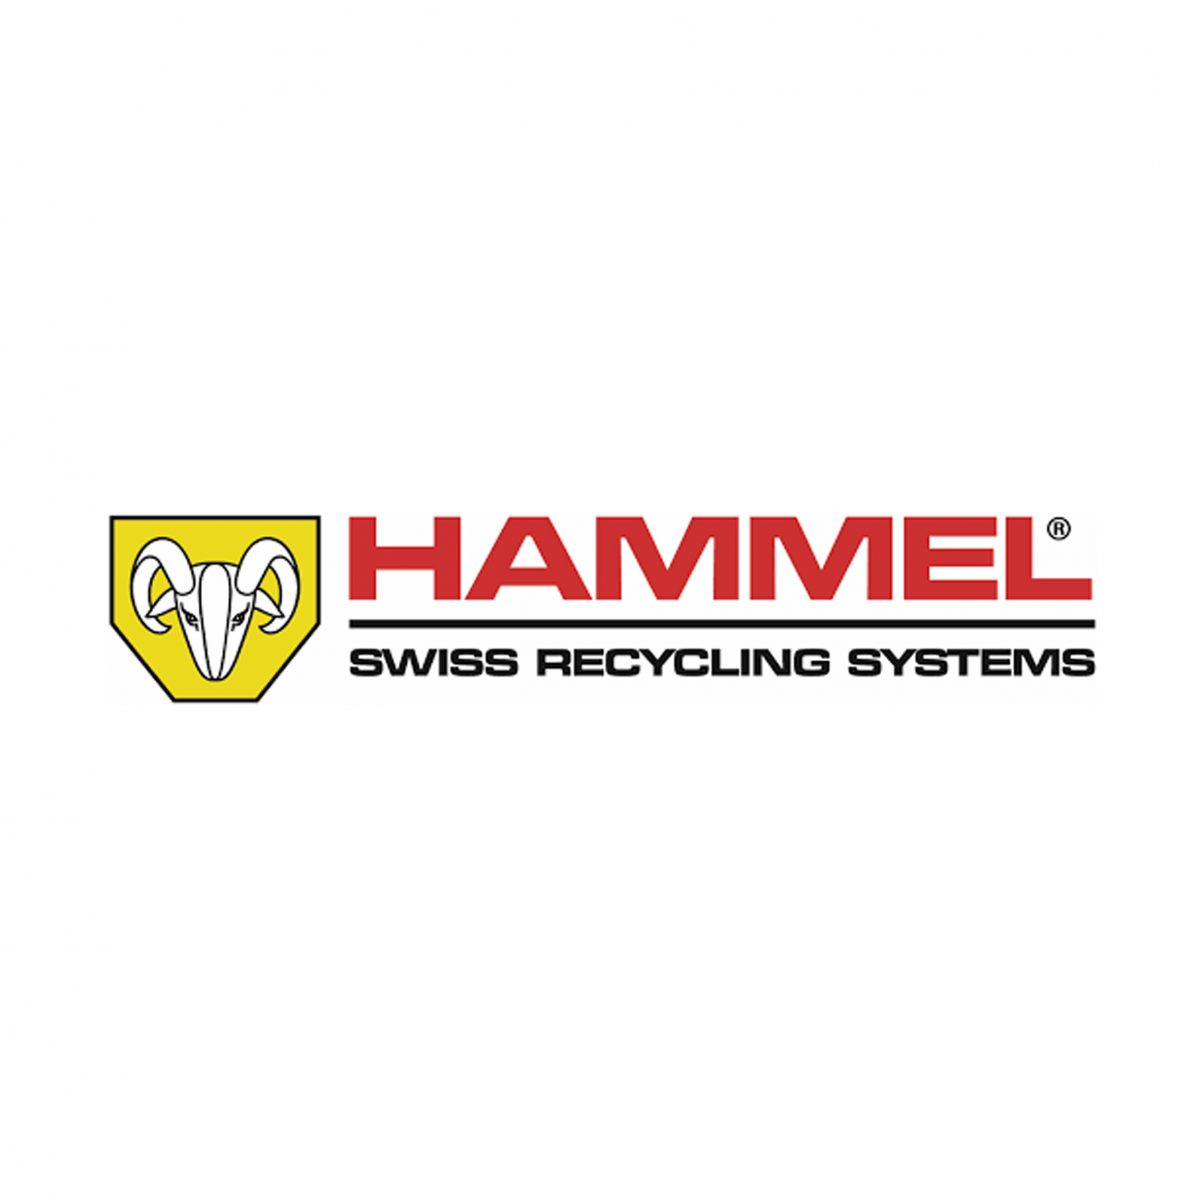 Distributeur Sud-Est de la marque HAMMEL